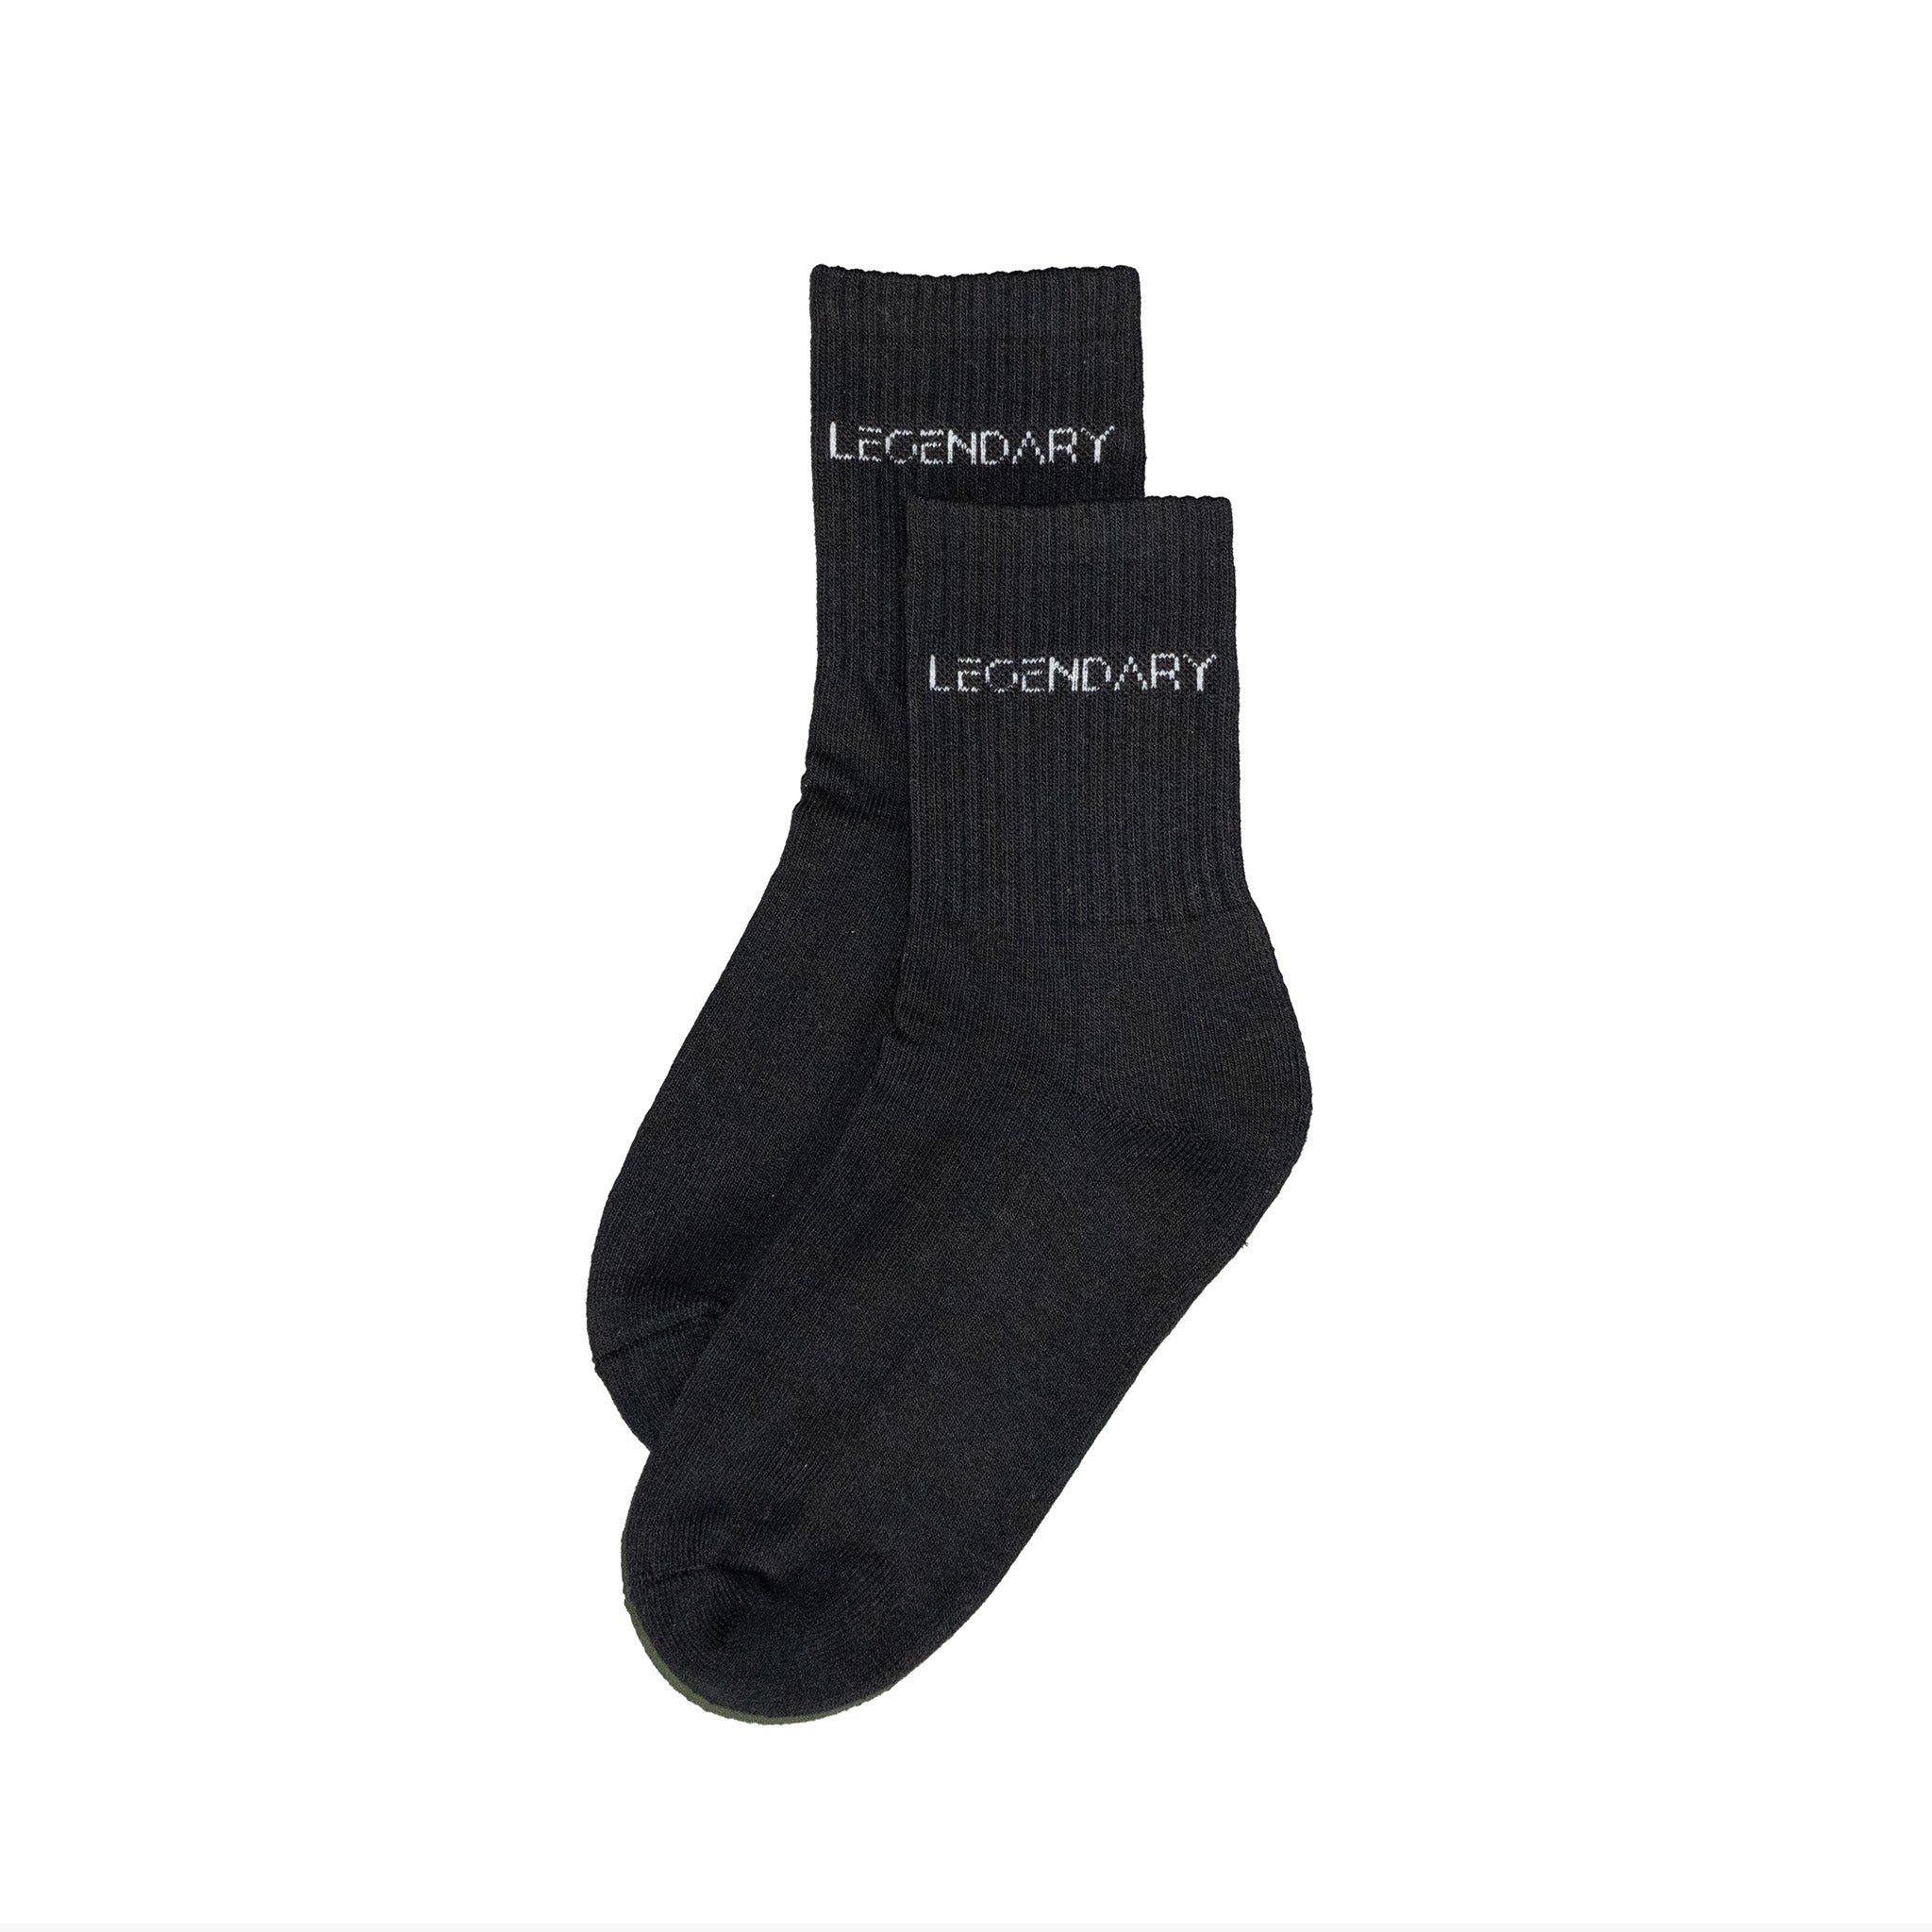 Legendary Socks Black